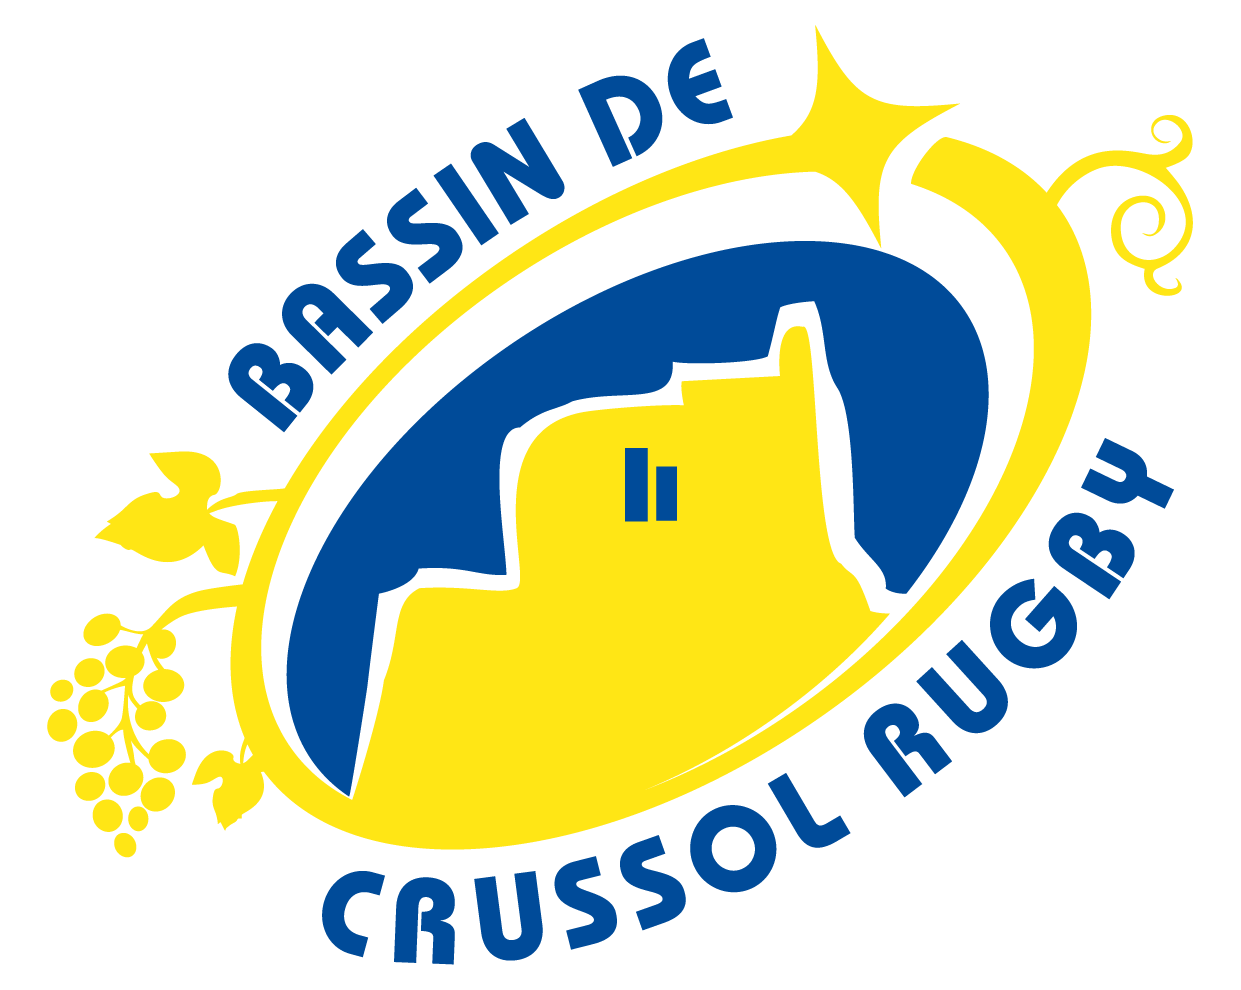 bassin-de-crussol-rugby-logo-620a653eb8484691890627.png